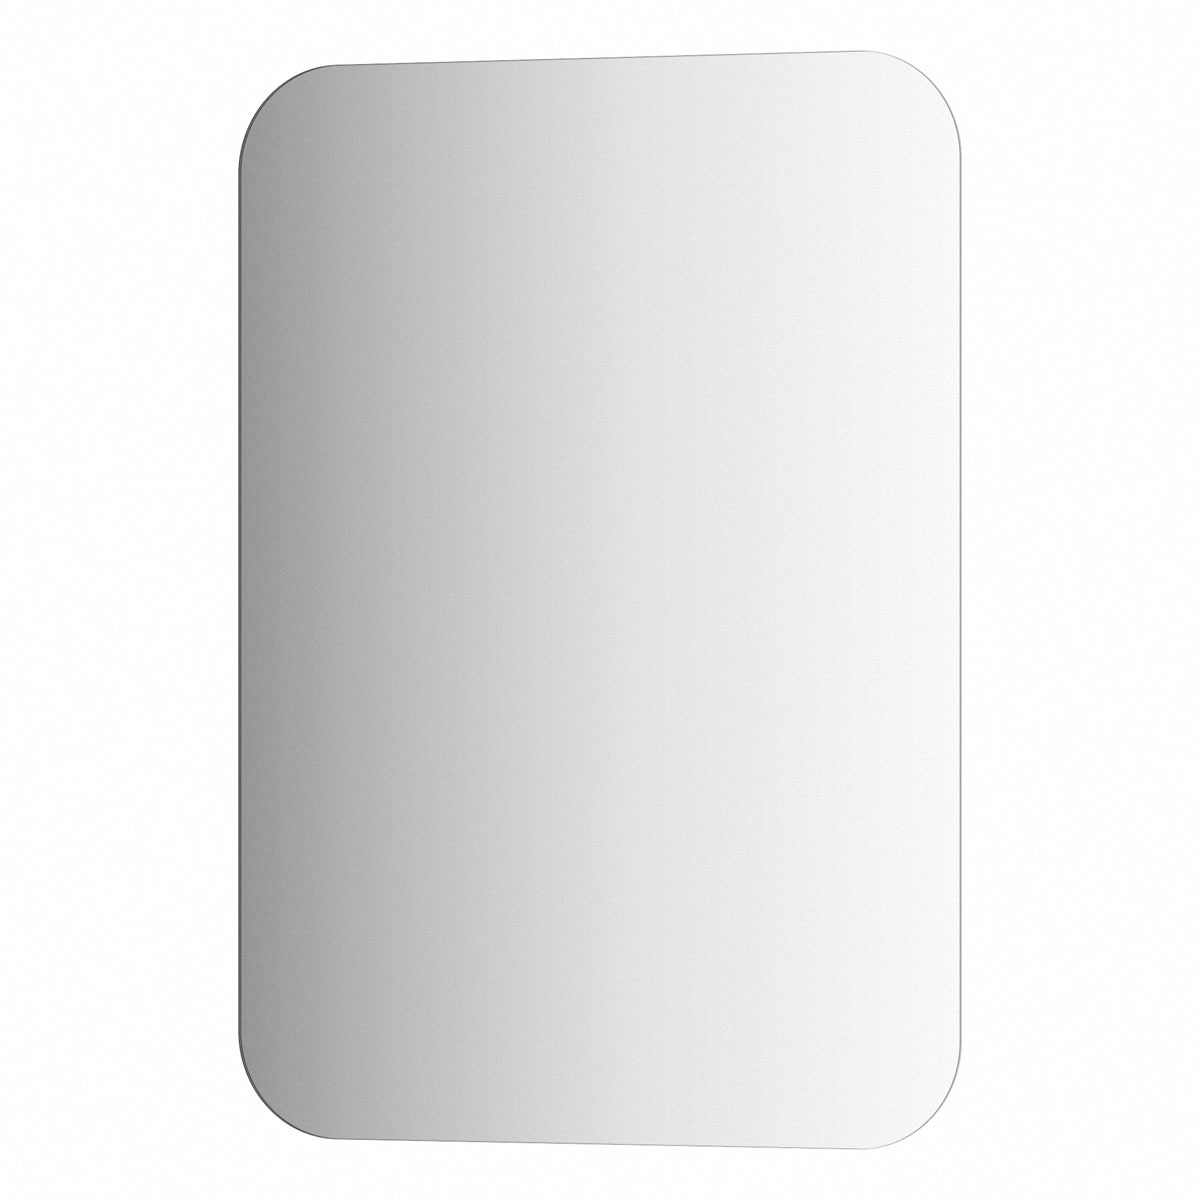 Зеркало Evoform со шлифованной кромкой 50х70 см зеркало evoform со шлифованной кромкой 50х70 см